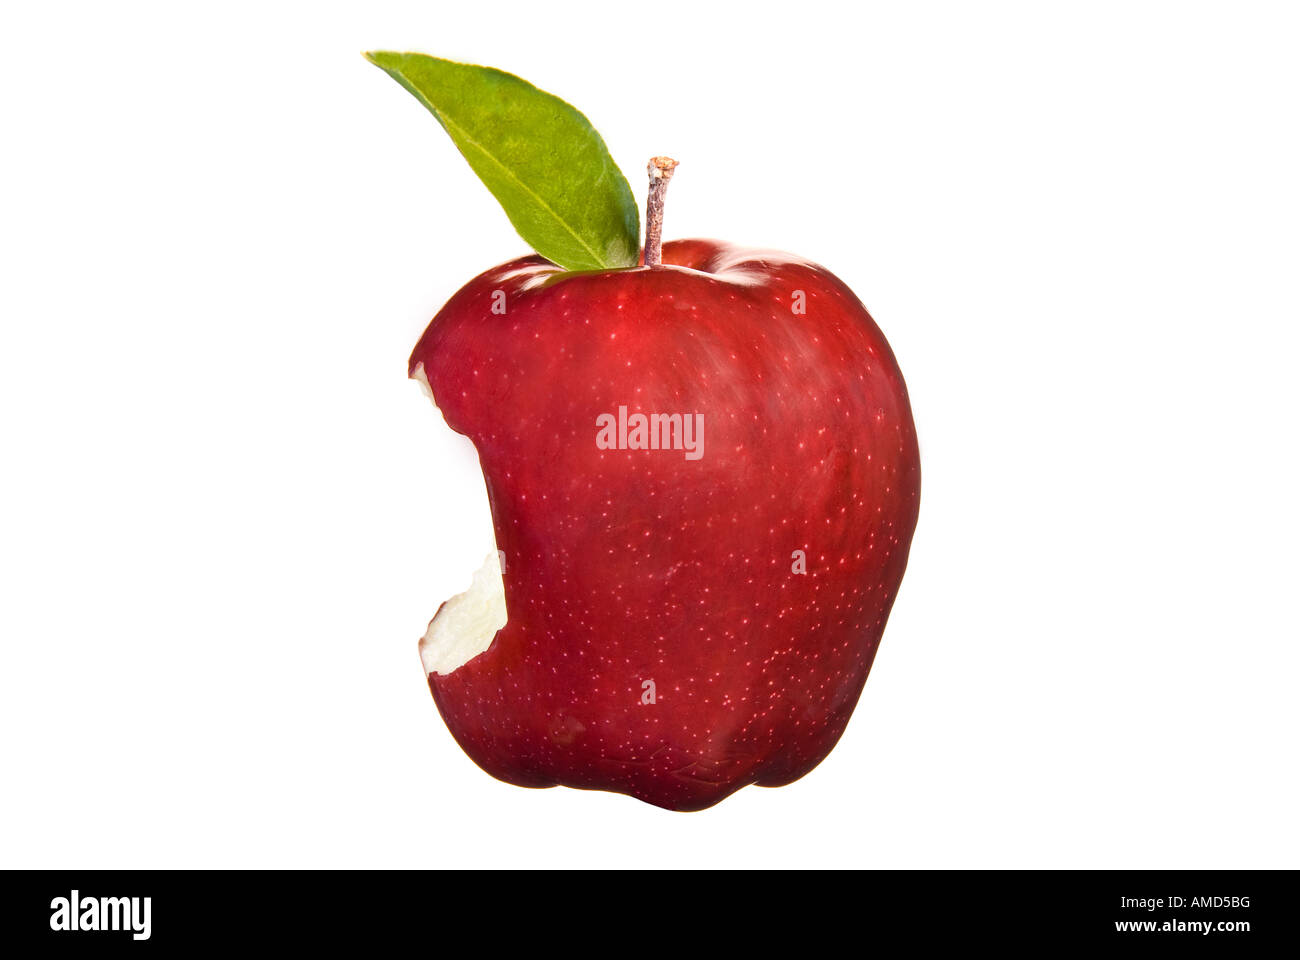 Ein frischen leckeren roter Apfel hat einen riesigen Bissen aus ihm heraus perfekt für jemanden auf eine gesunde fettarme Ernährung Stockfoto